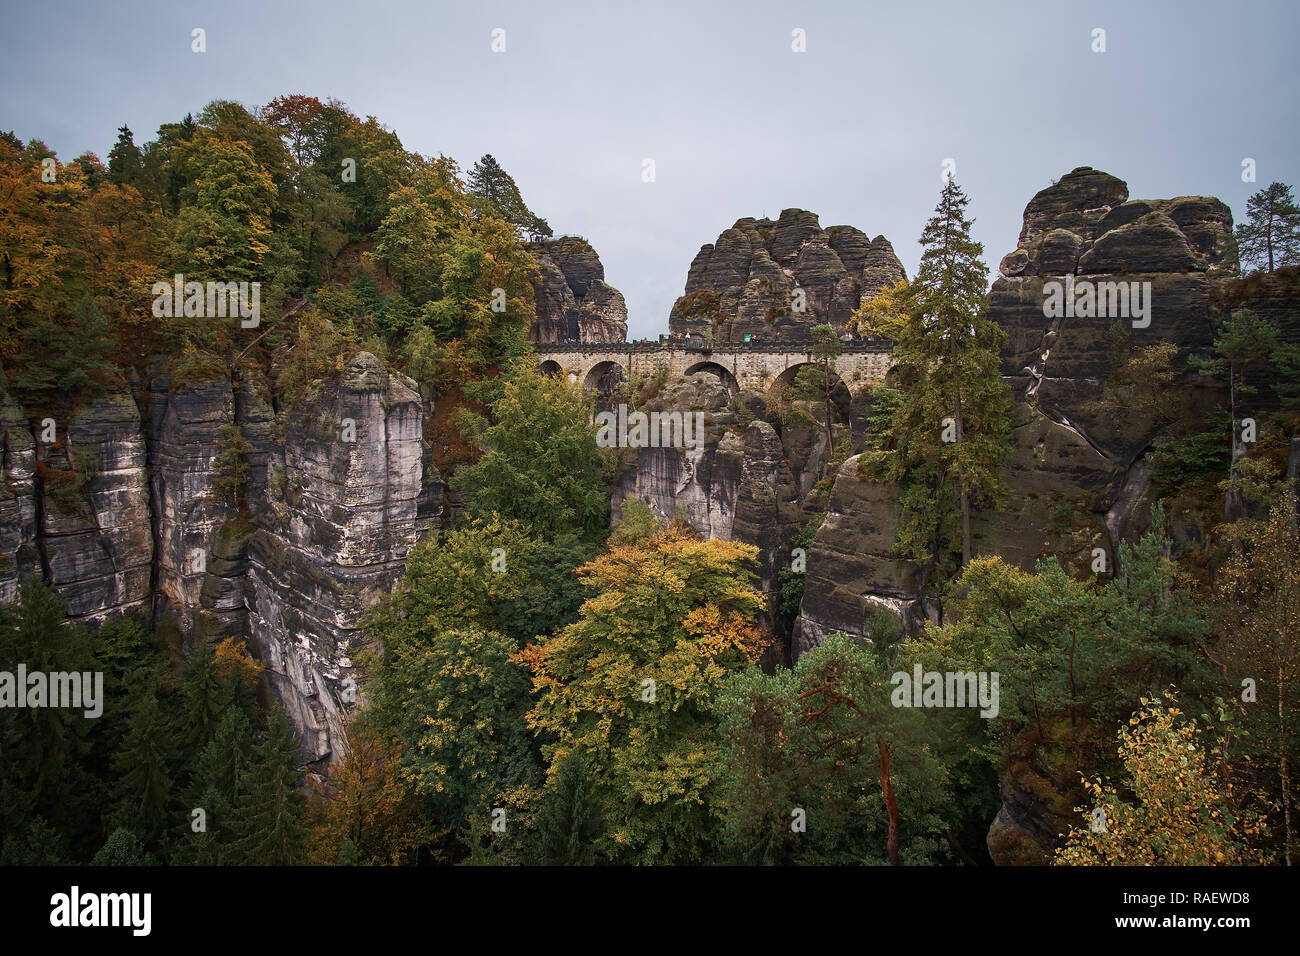 Pont de pierre Bastei dans la Suisse saxonne avec la brume des pluies au cours de l'Elbe, la Suisse Saxonne Parc National. Banque D'Images